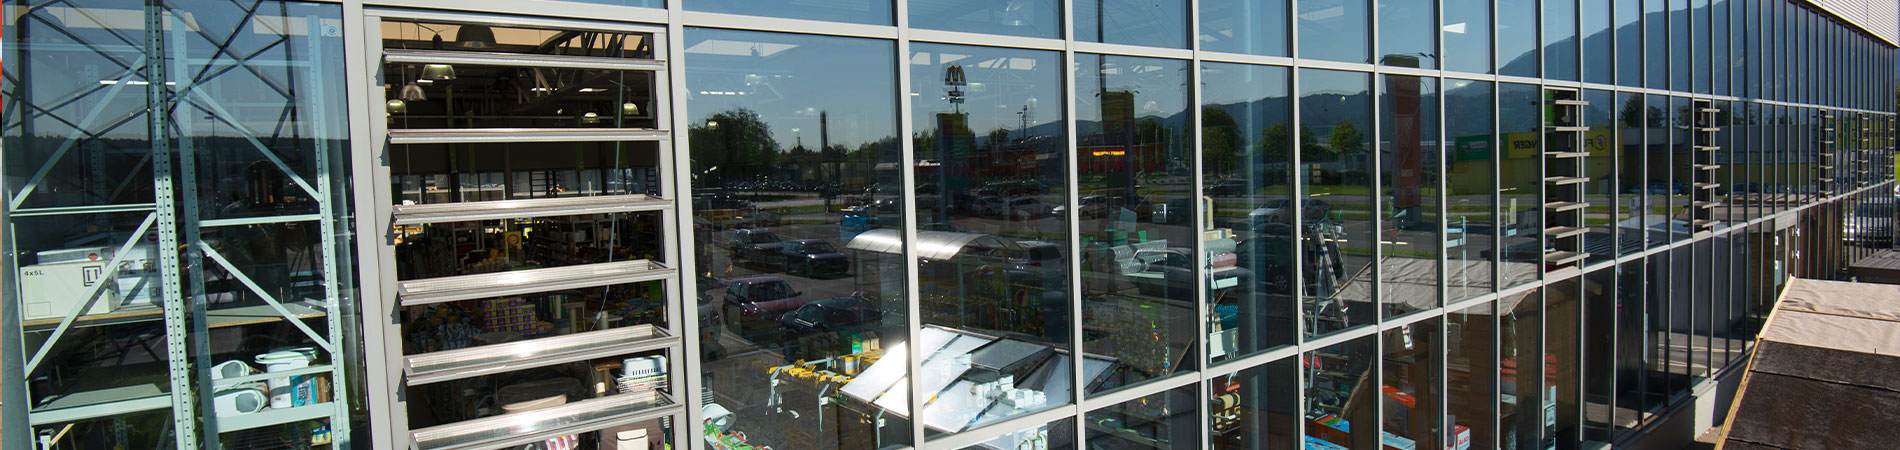 Glasfassade mit Lamellenfenstern